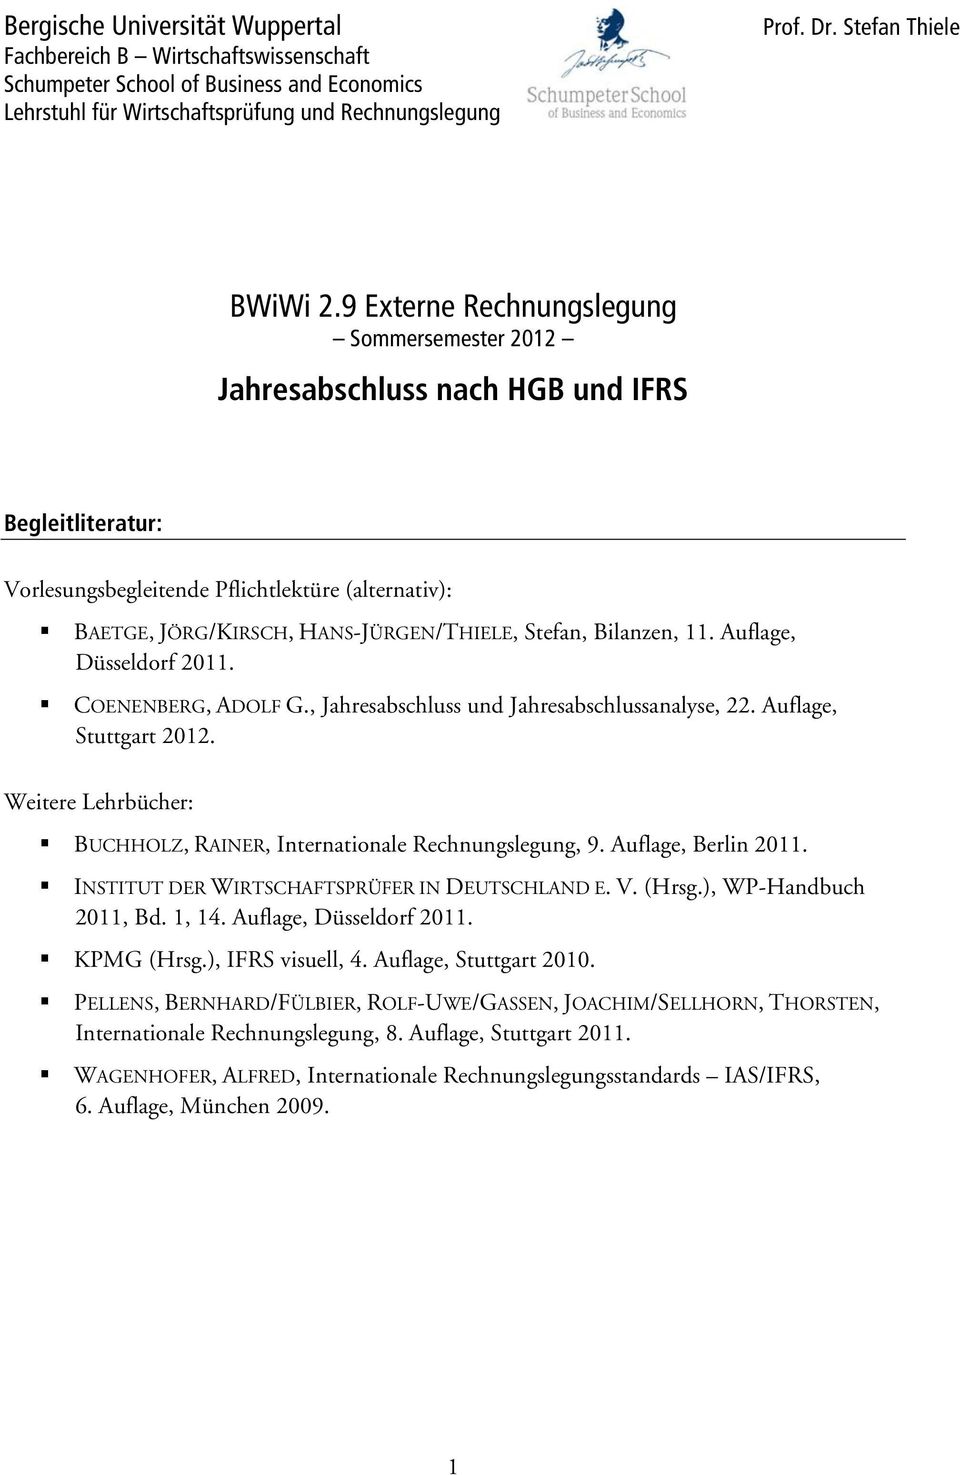 Bilanzen, 11. Auflage, Düsseldorf 2011. COENENBERG, ADOLF G., Jahresabschluss und Jahresabschlussanalyse, 22. Auflage, Stuttgart 2012.